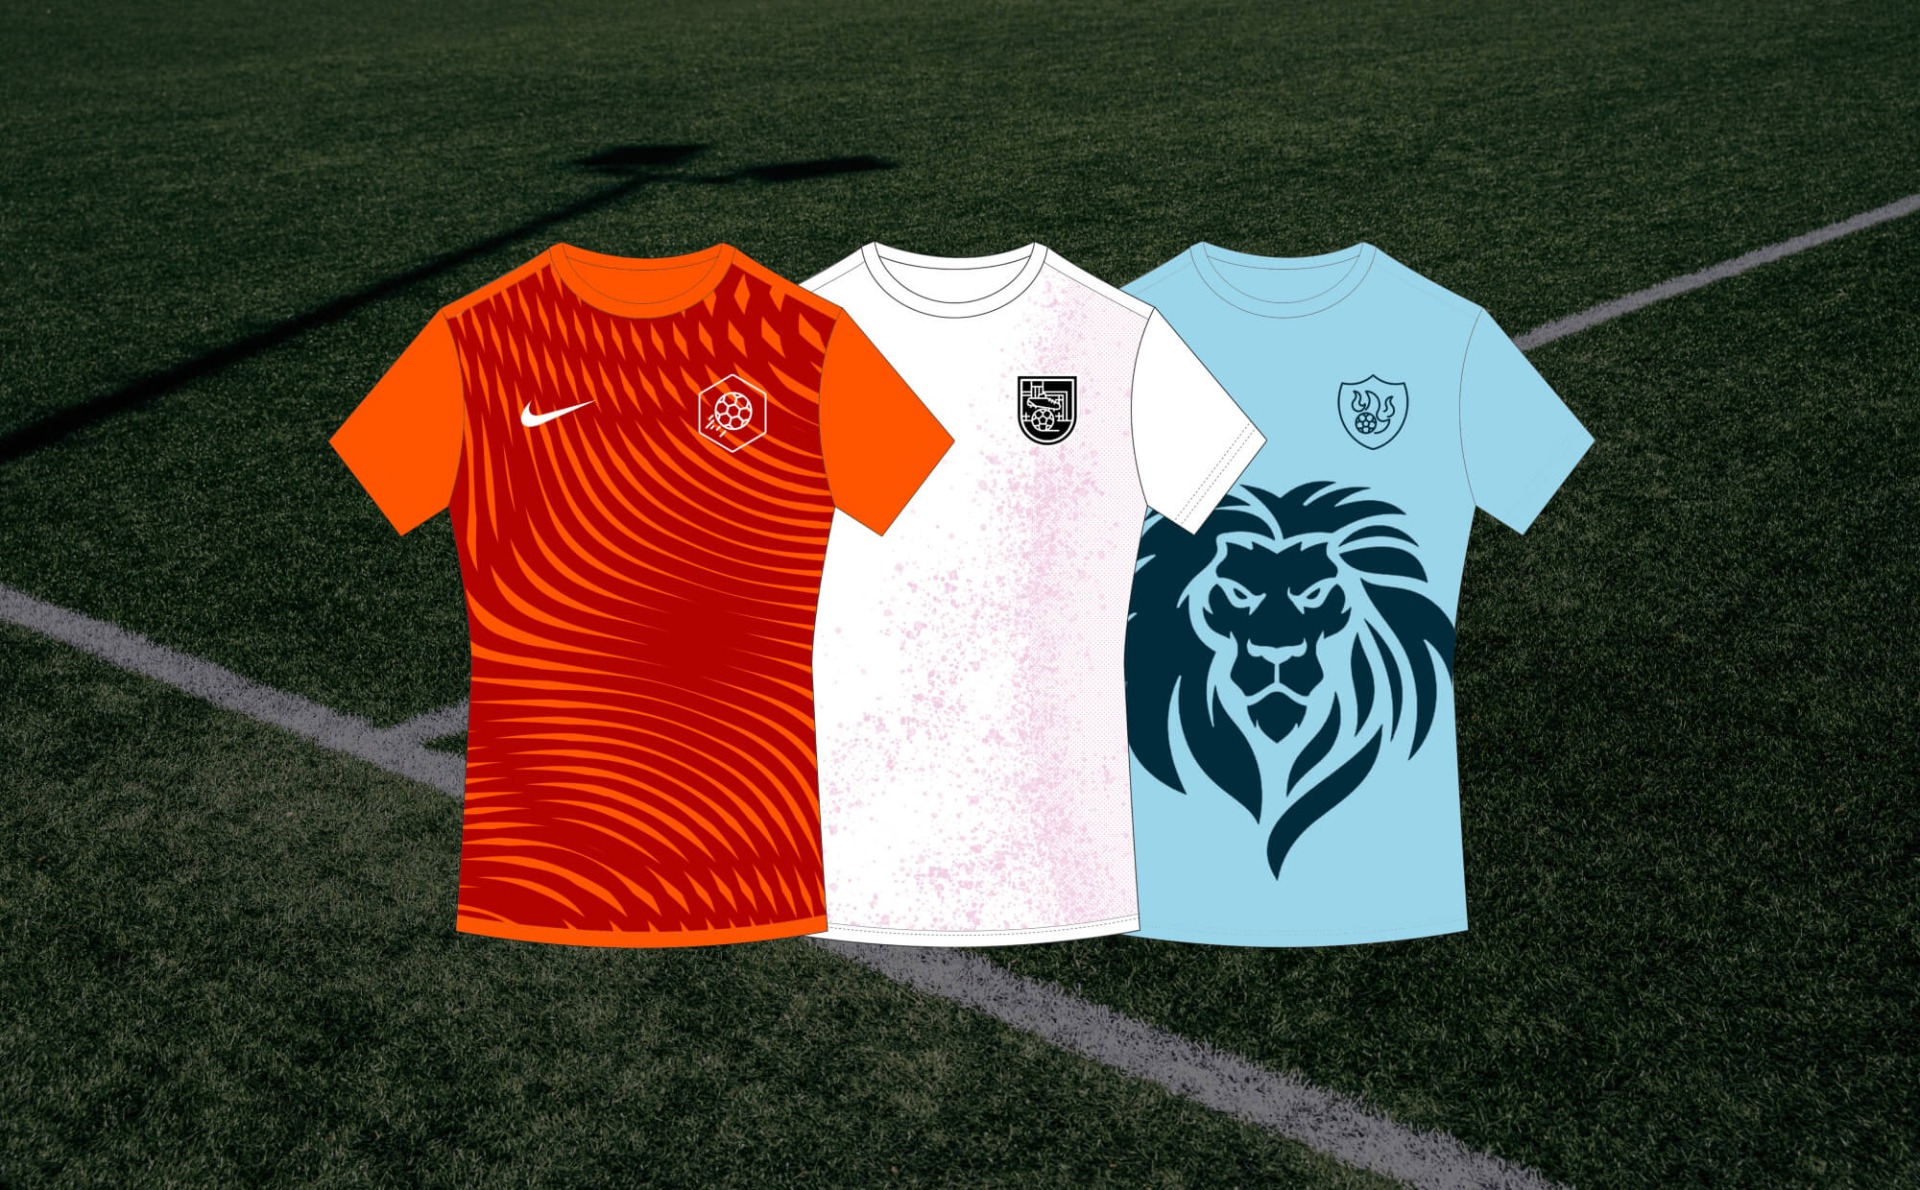 Gezondheid rots gebruiker Ontwerp jouw voetbalshirt en win dat shirt voor je voetbalteam!